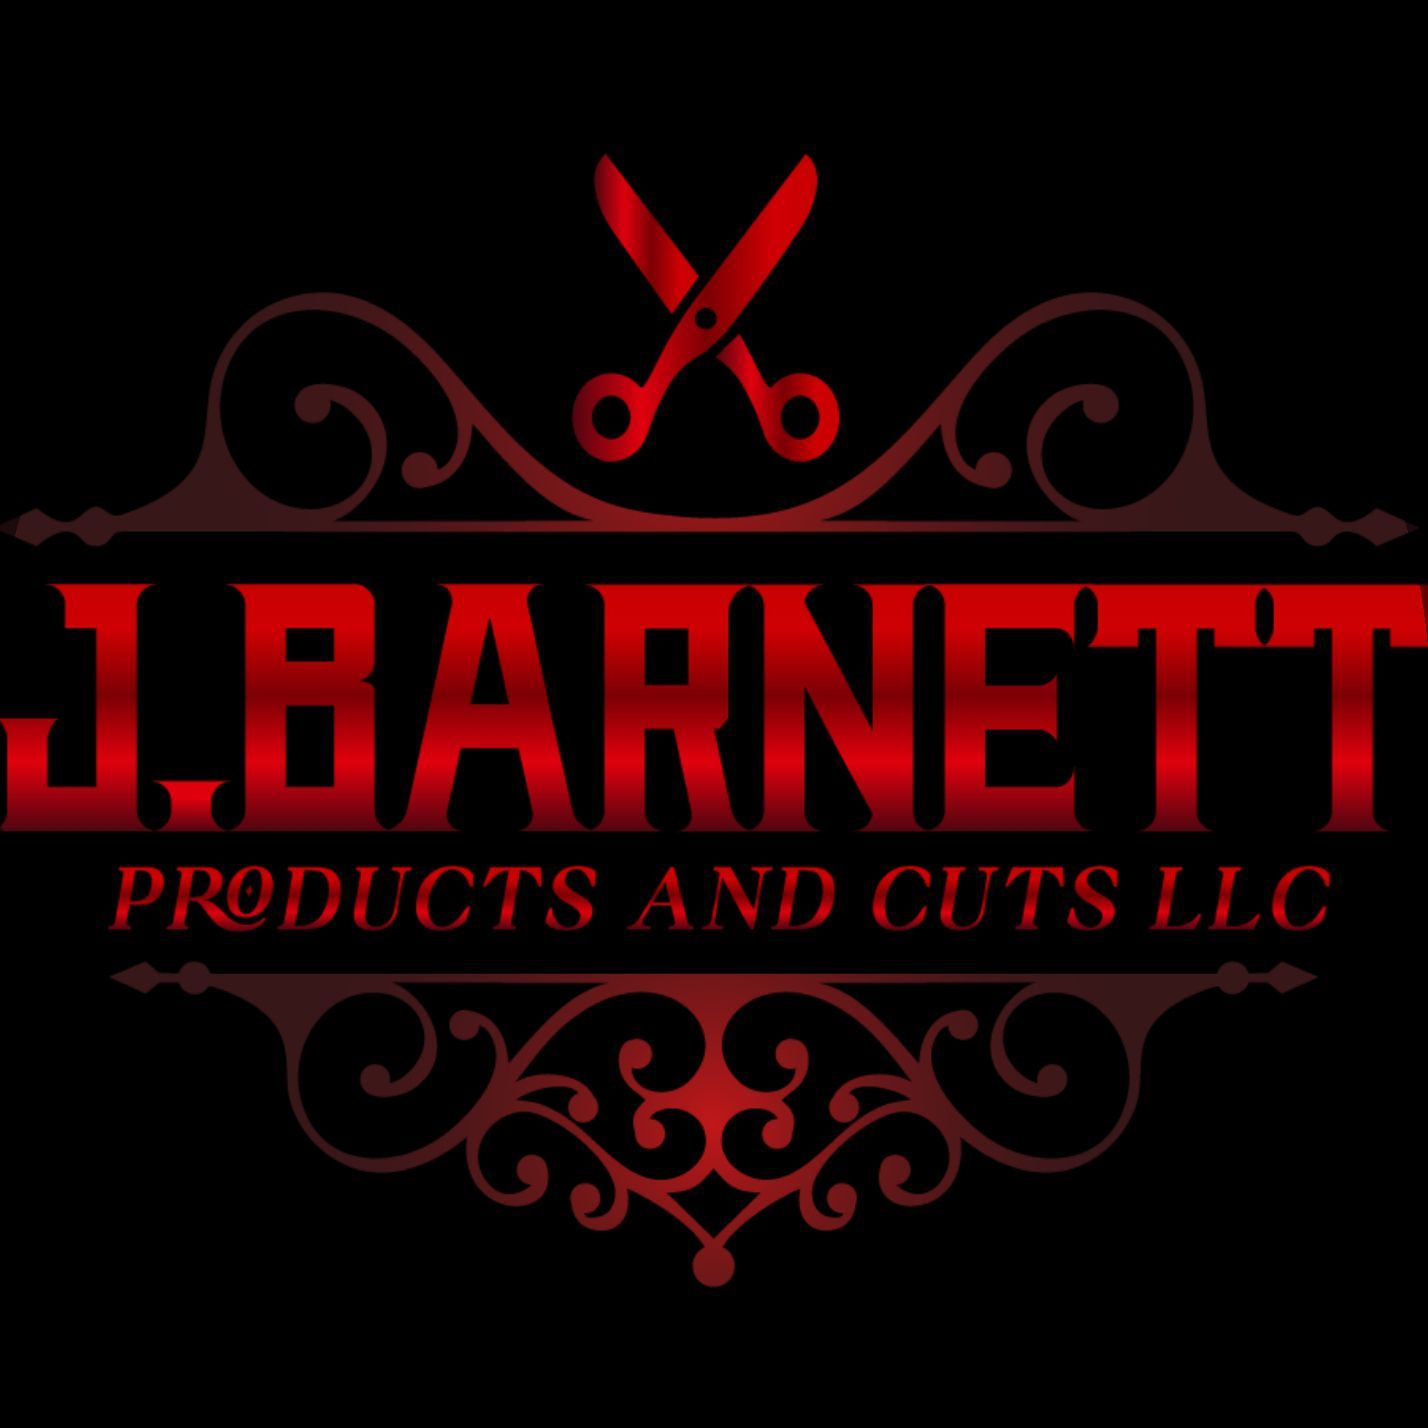 JBarnett Products and Cuts LLC, 206 Main St, Heidelberg, 39439